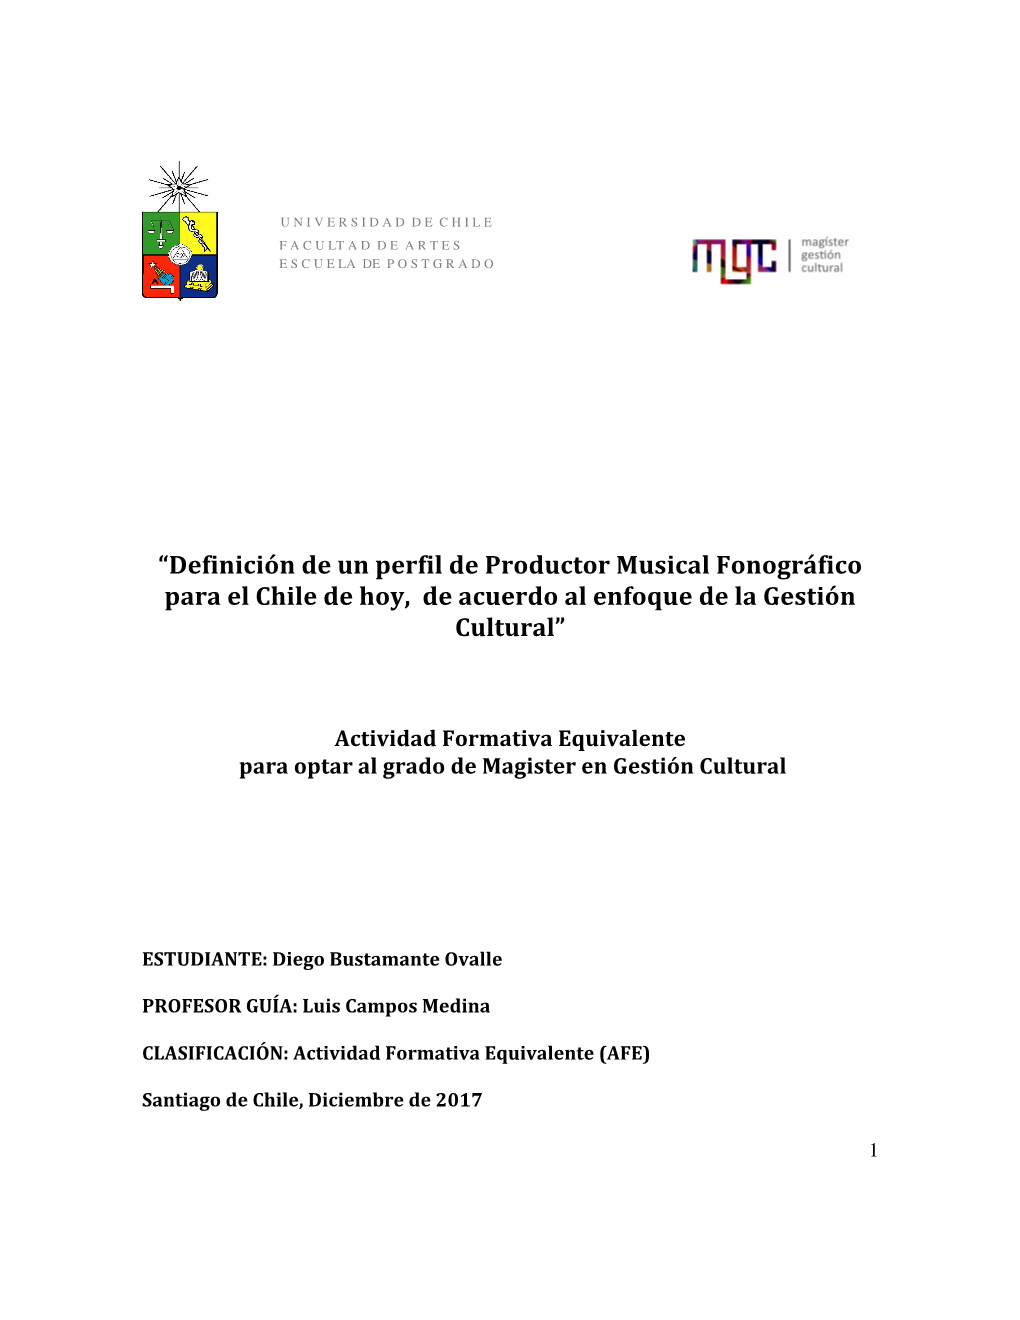 Definición De Un Perfil De Productor Musical Fonográfico Para El Chile De Hoy, De Acuerdo Al Enfoque De La Gestión Cultural”